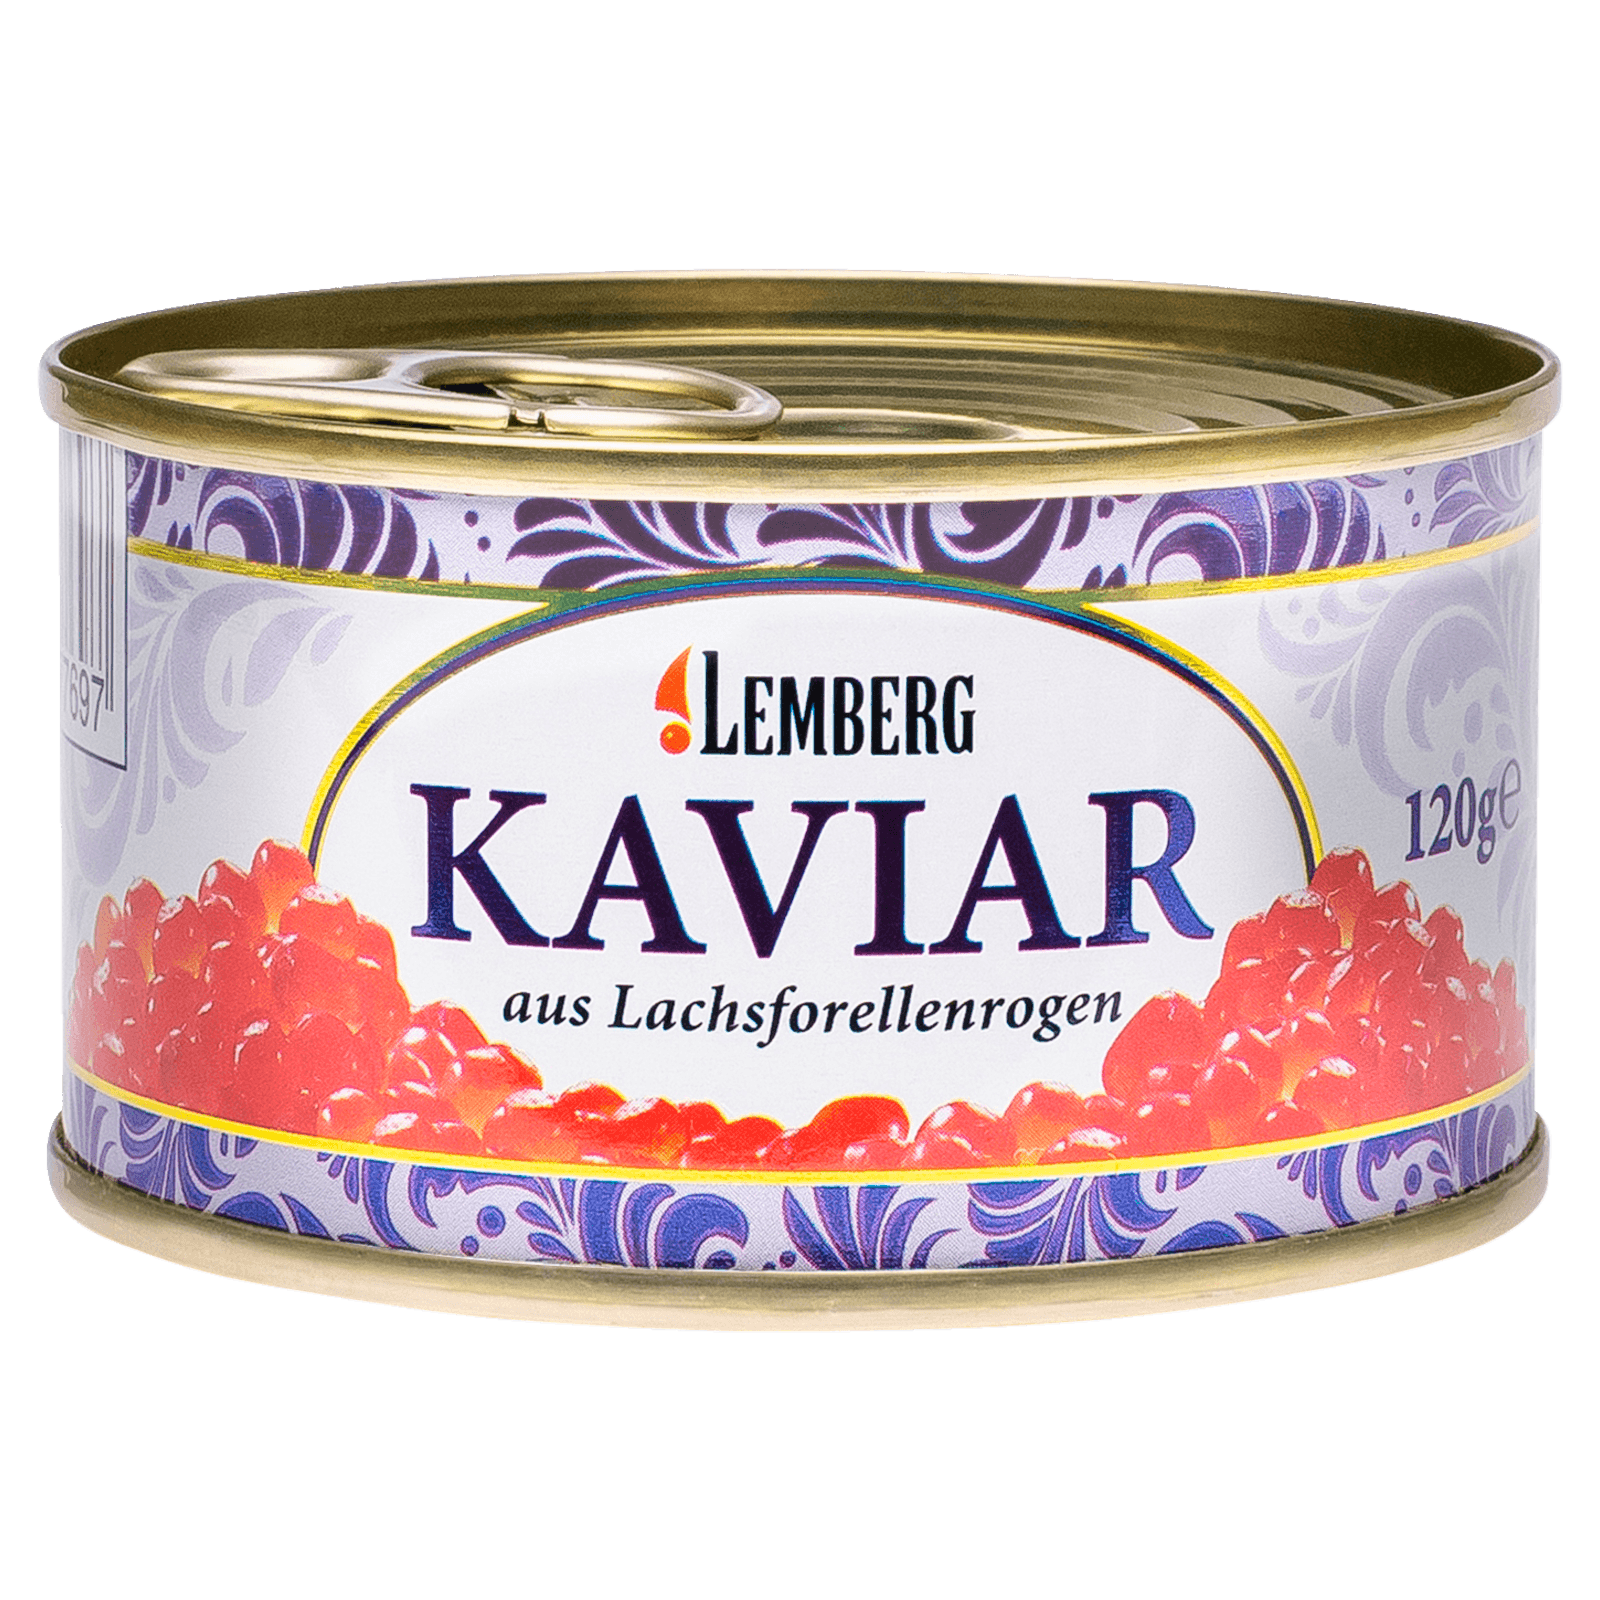 Lemberg Kaviar Lachsforellenroggen 90g bei REWE online bestellen!